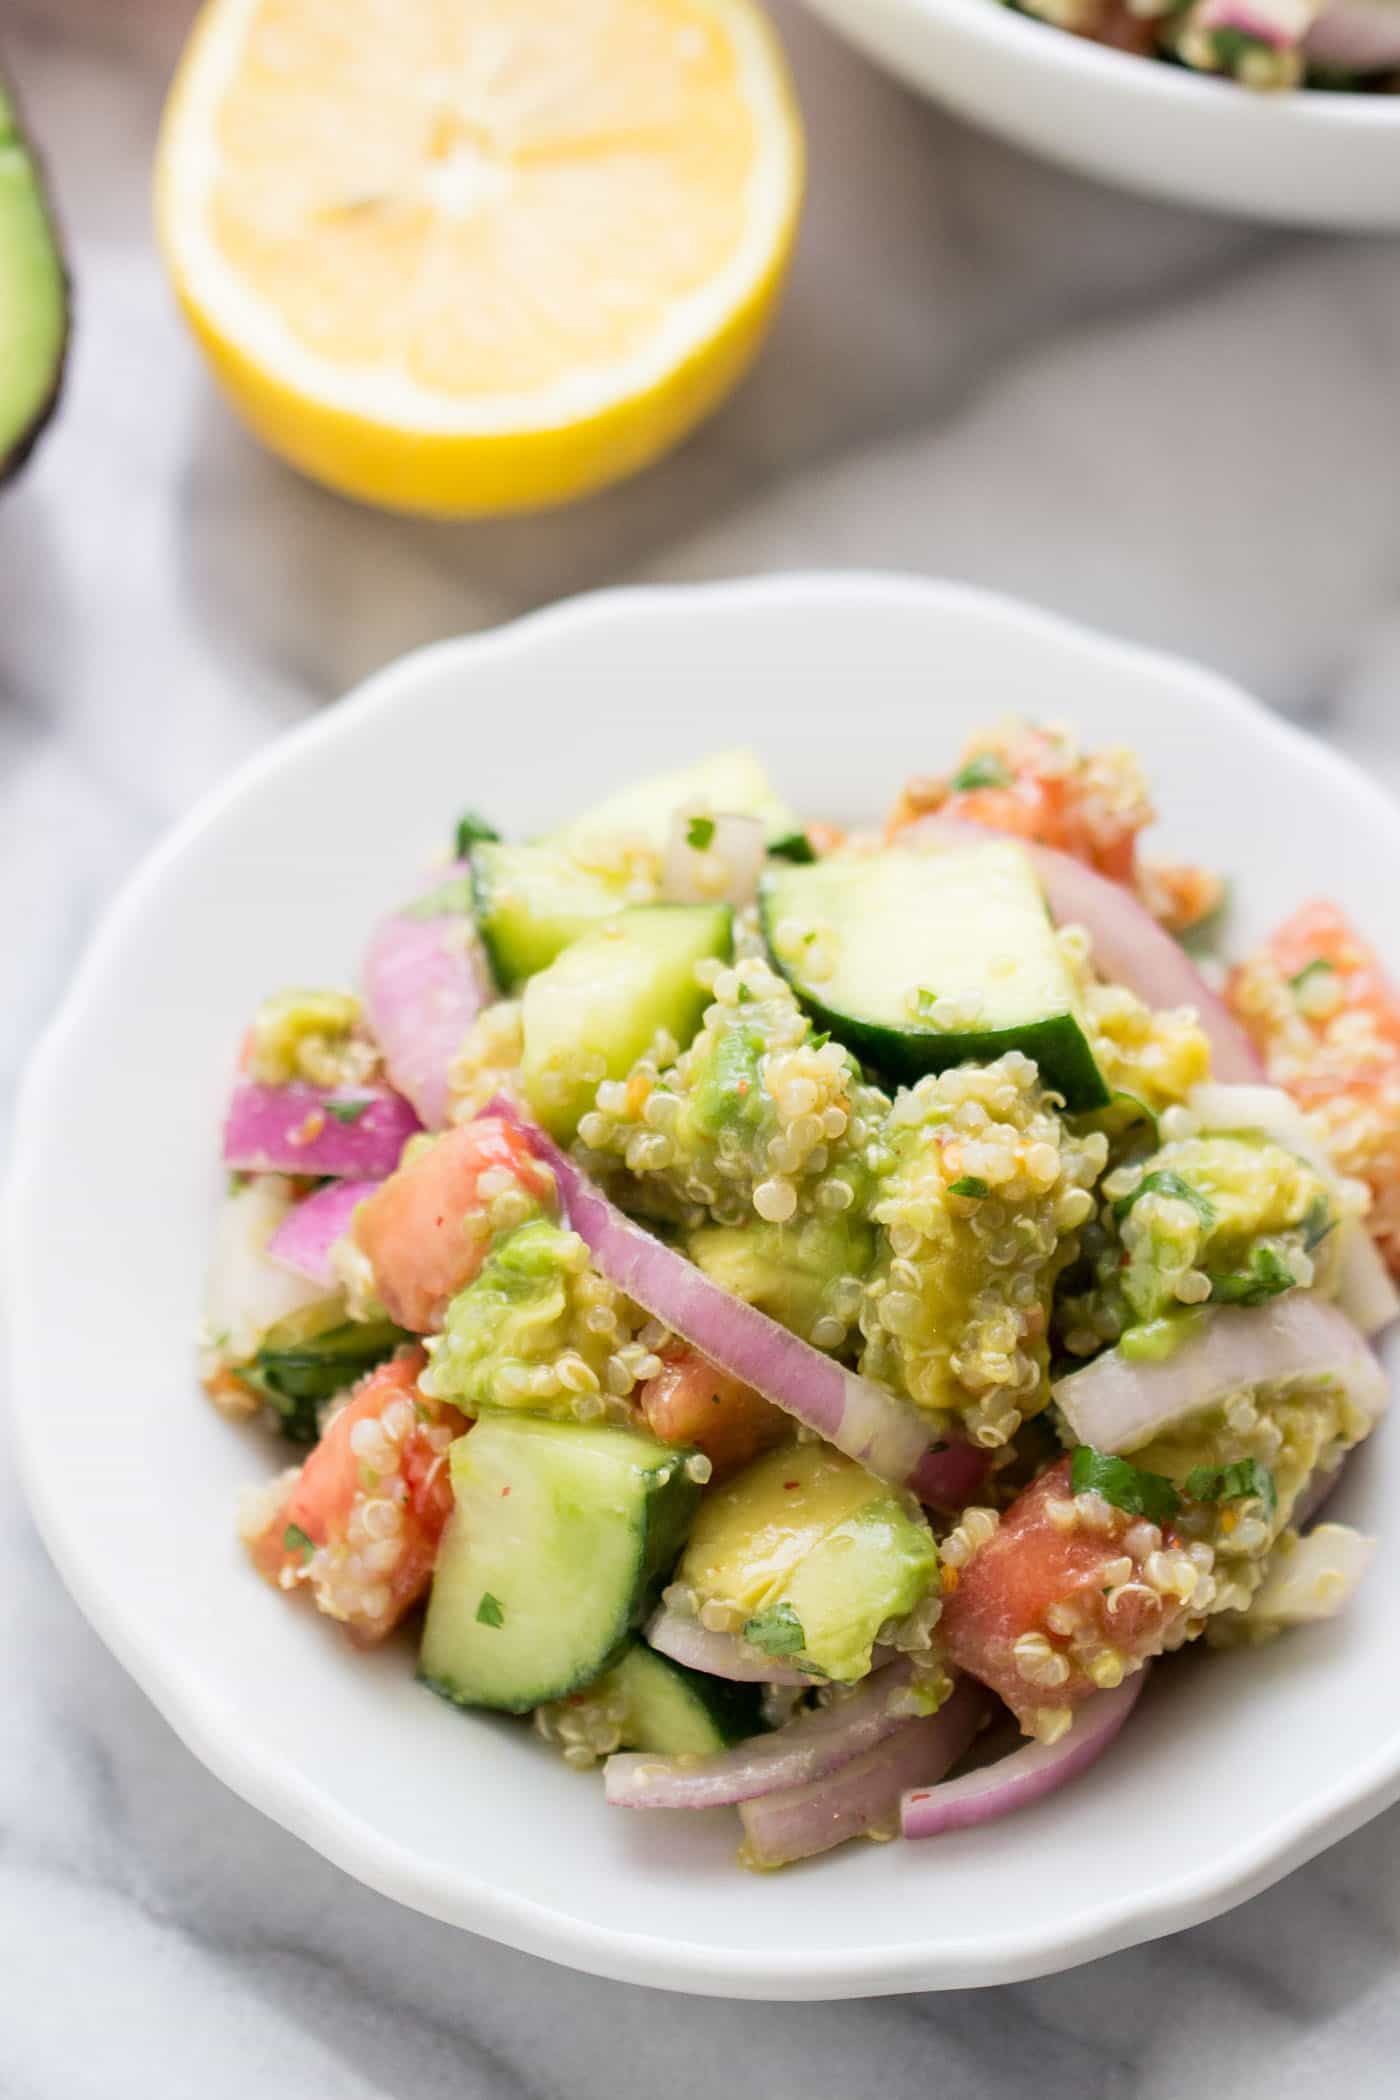 Ein einfacher Avocado-Quinoa-Salat mit Gurken und Tomaten - perfekt zum Mittagessen oder für ein leichtes Sommeressen!